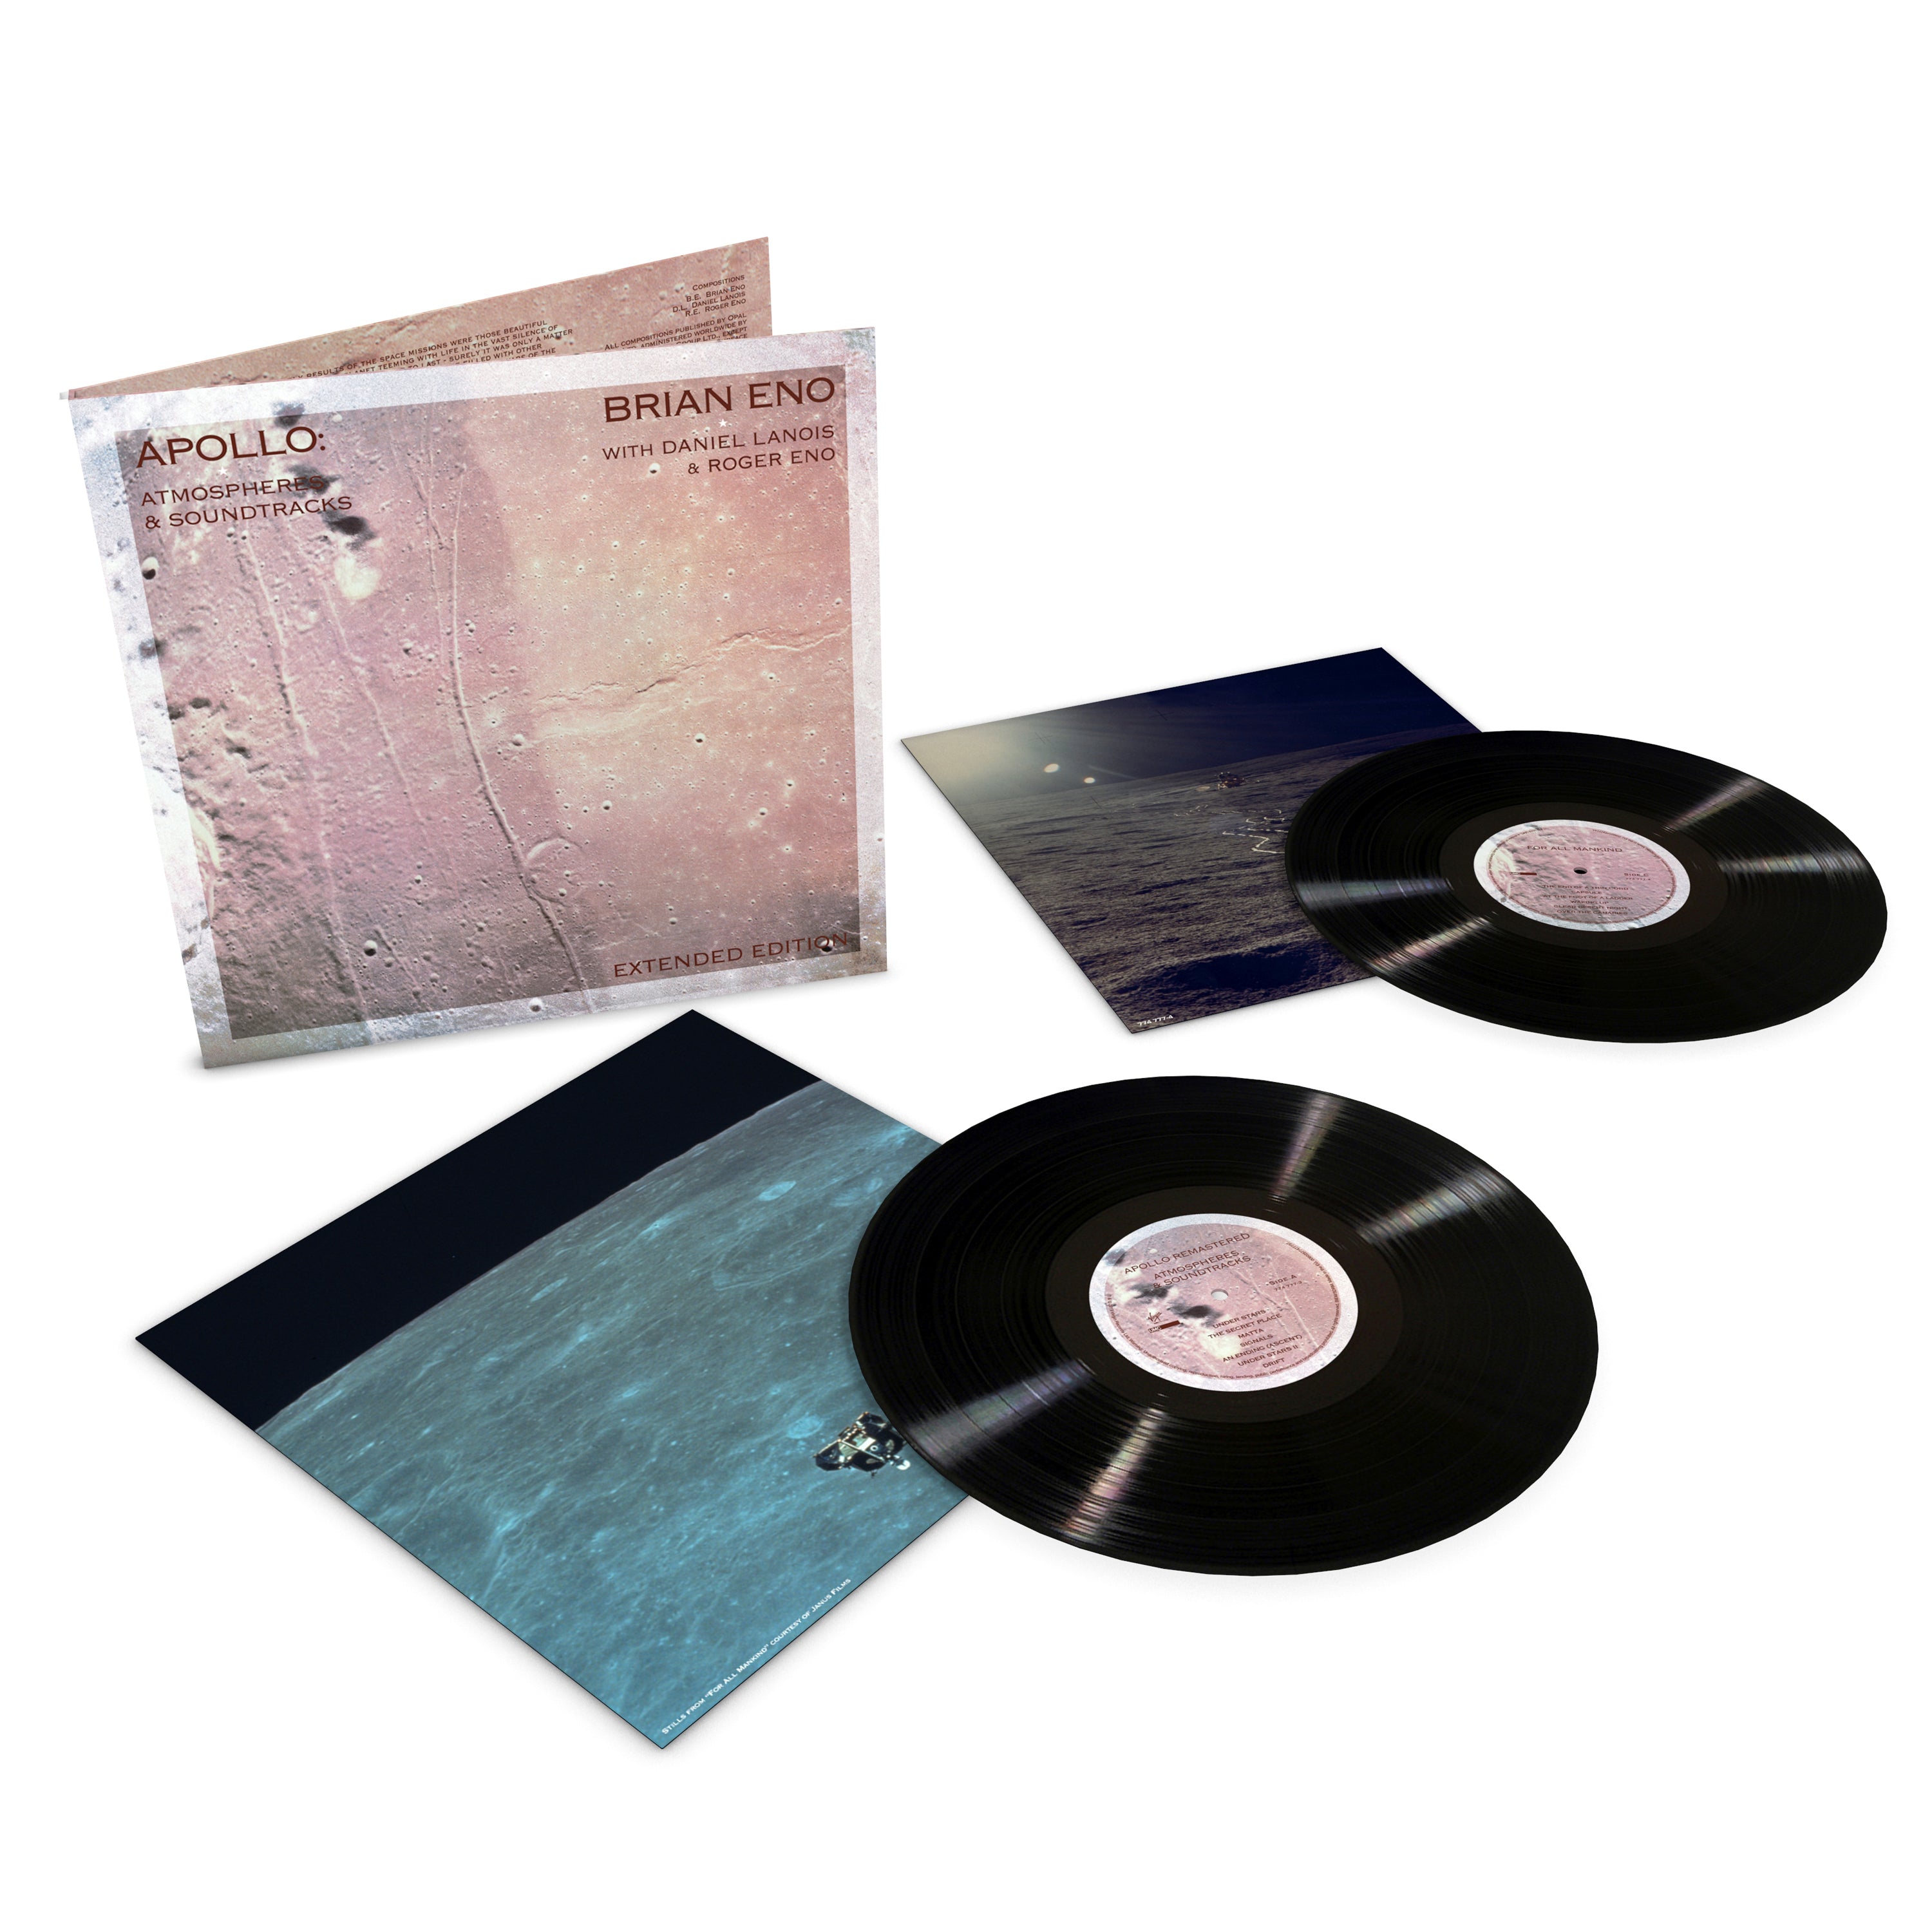 Brian Eno - Apollo - Atmospheres And Soundtracks: Vinyl 2LP